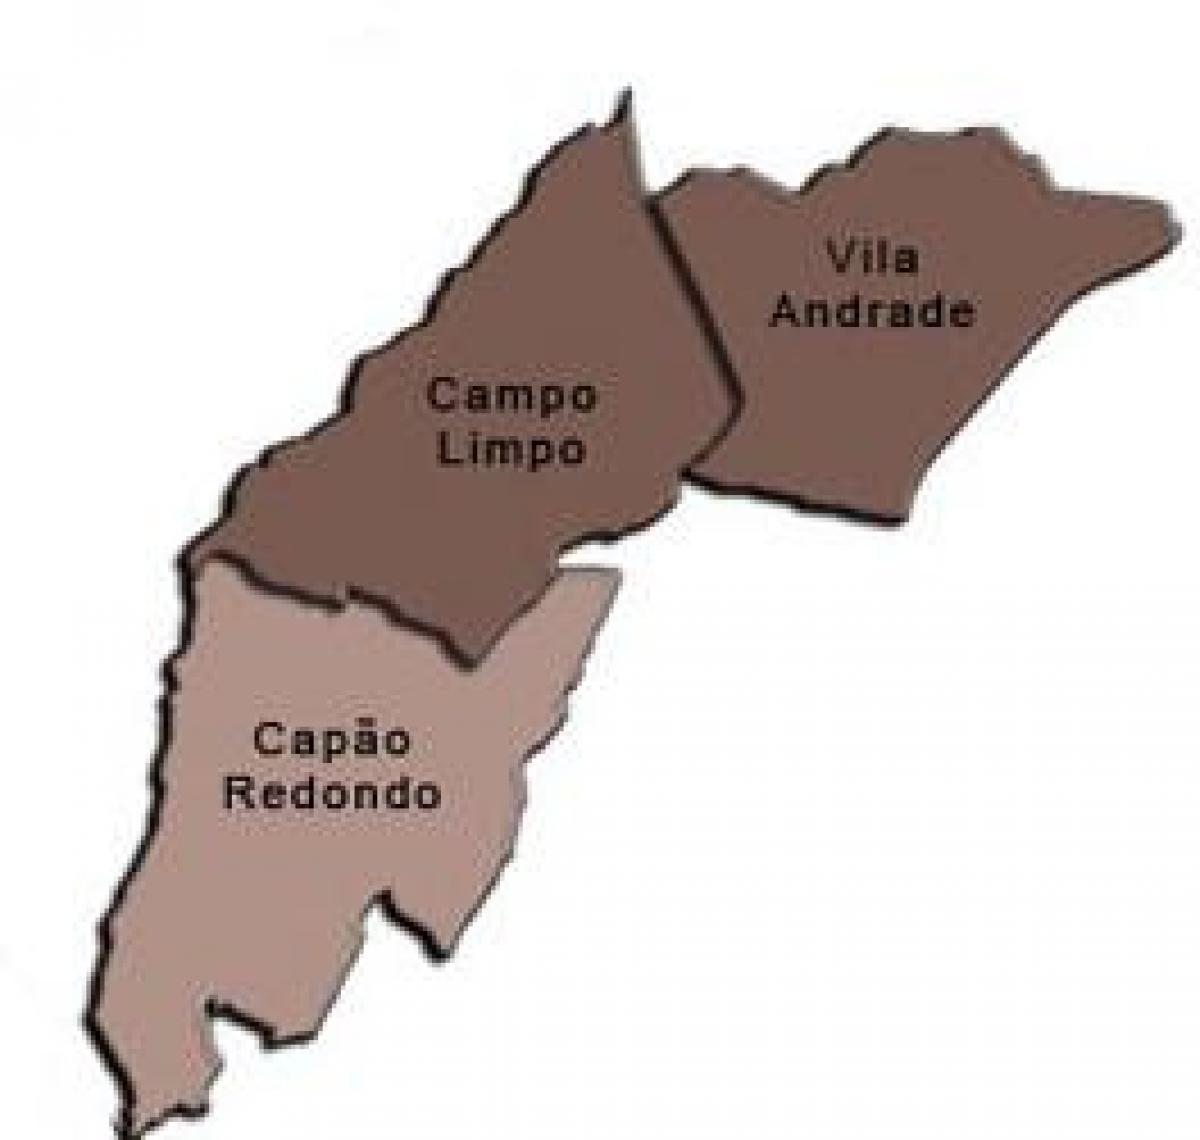 نقشه کمپو لیمپو آدور